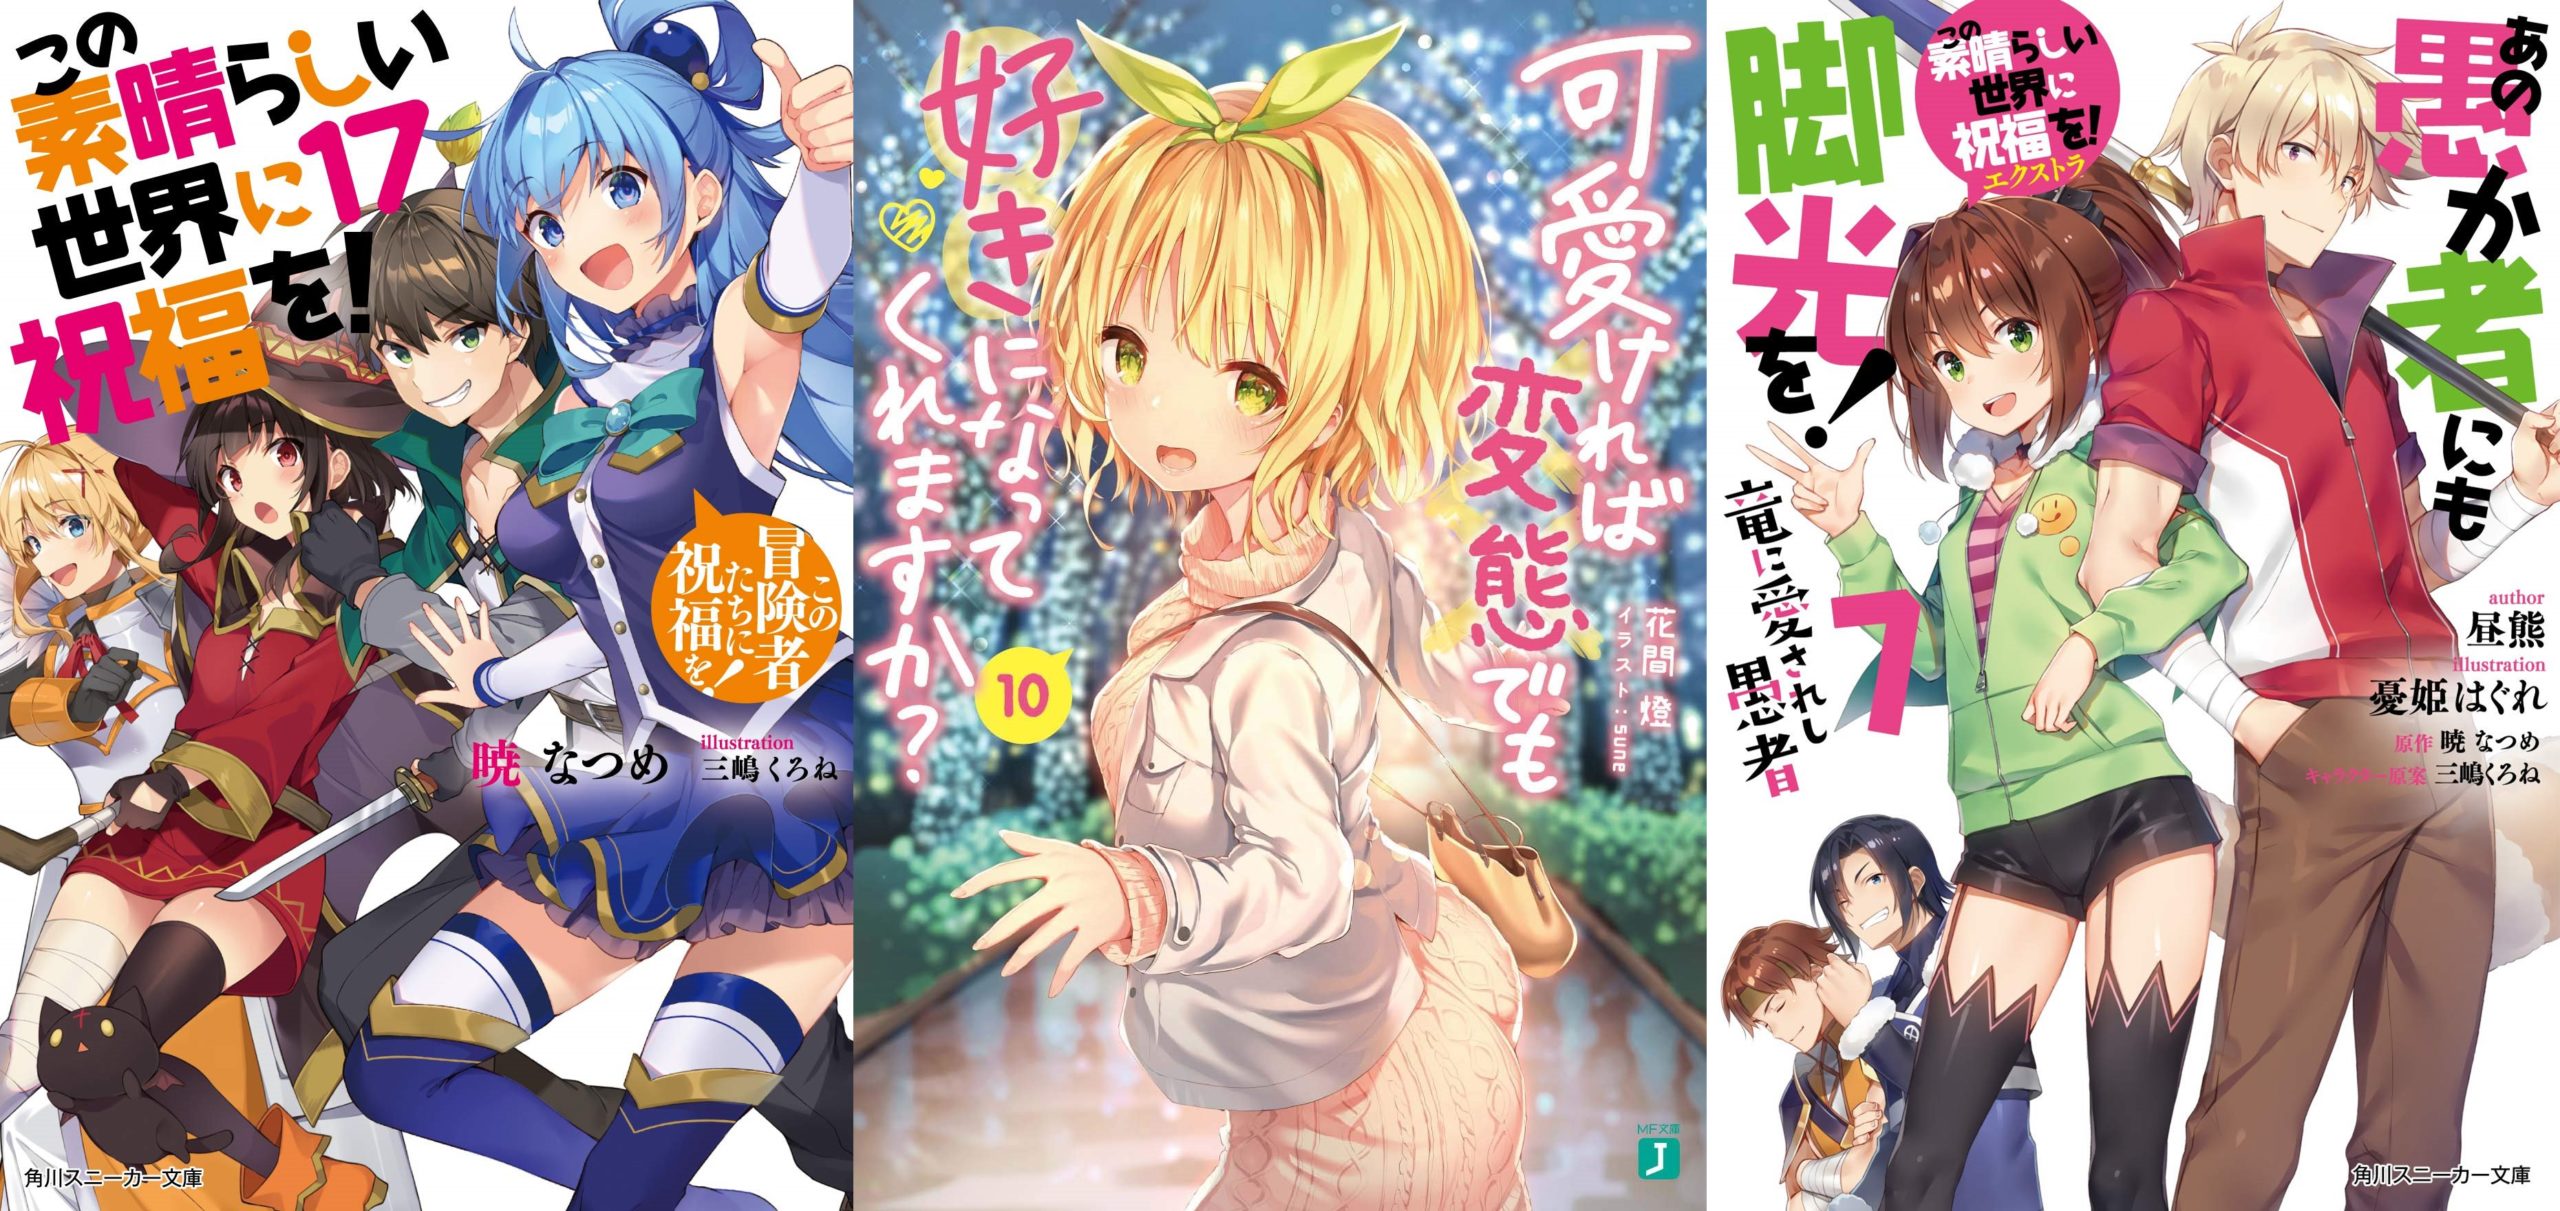 Último volume de KonoSuba vendendo bem! – Light Novels mais